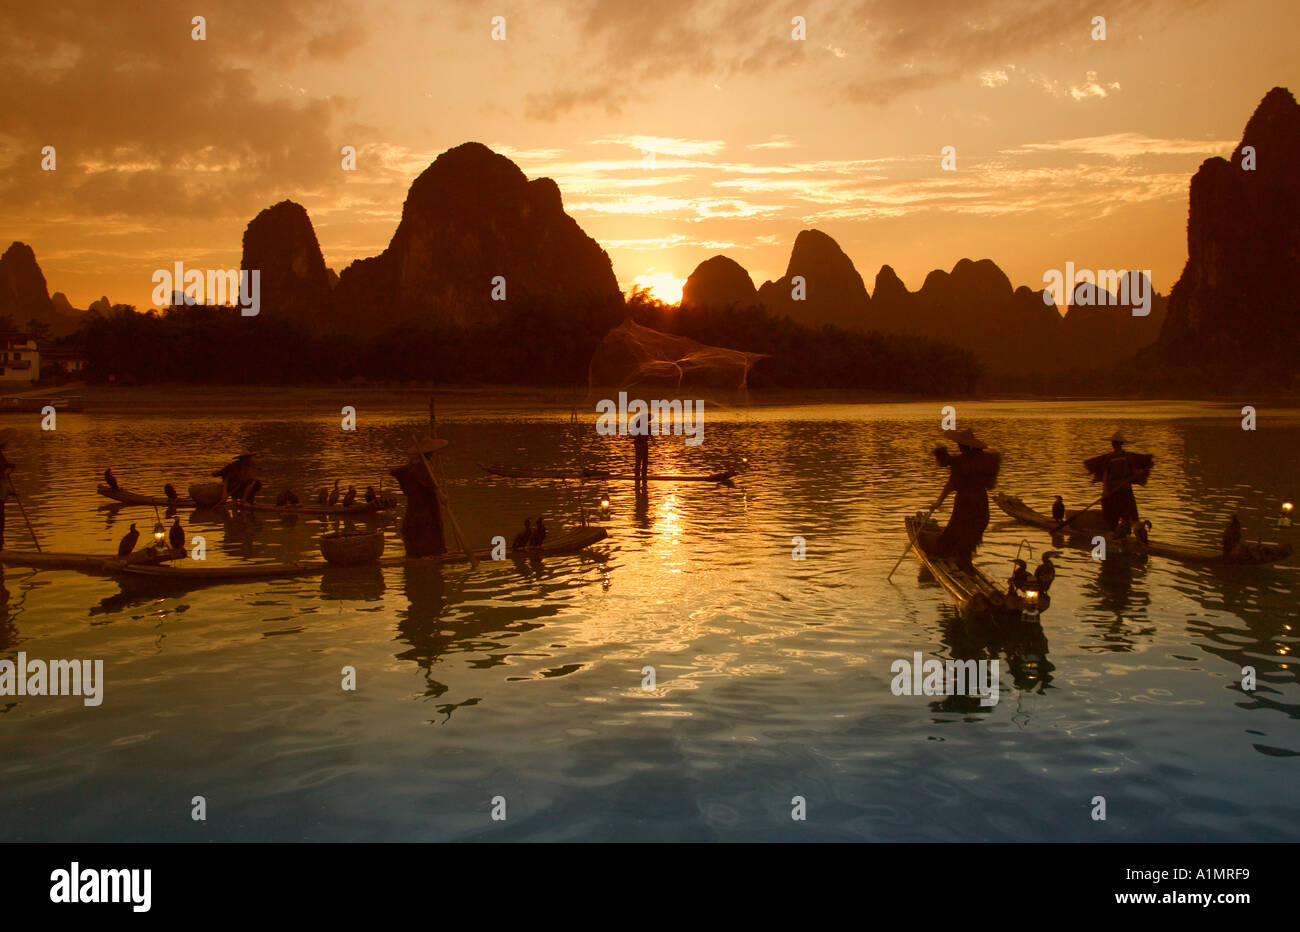 Fishermen on bamboo rafts on Li River at sunset Guangxi Province China Stock Photo